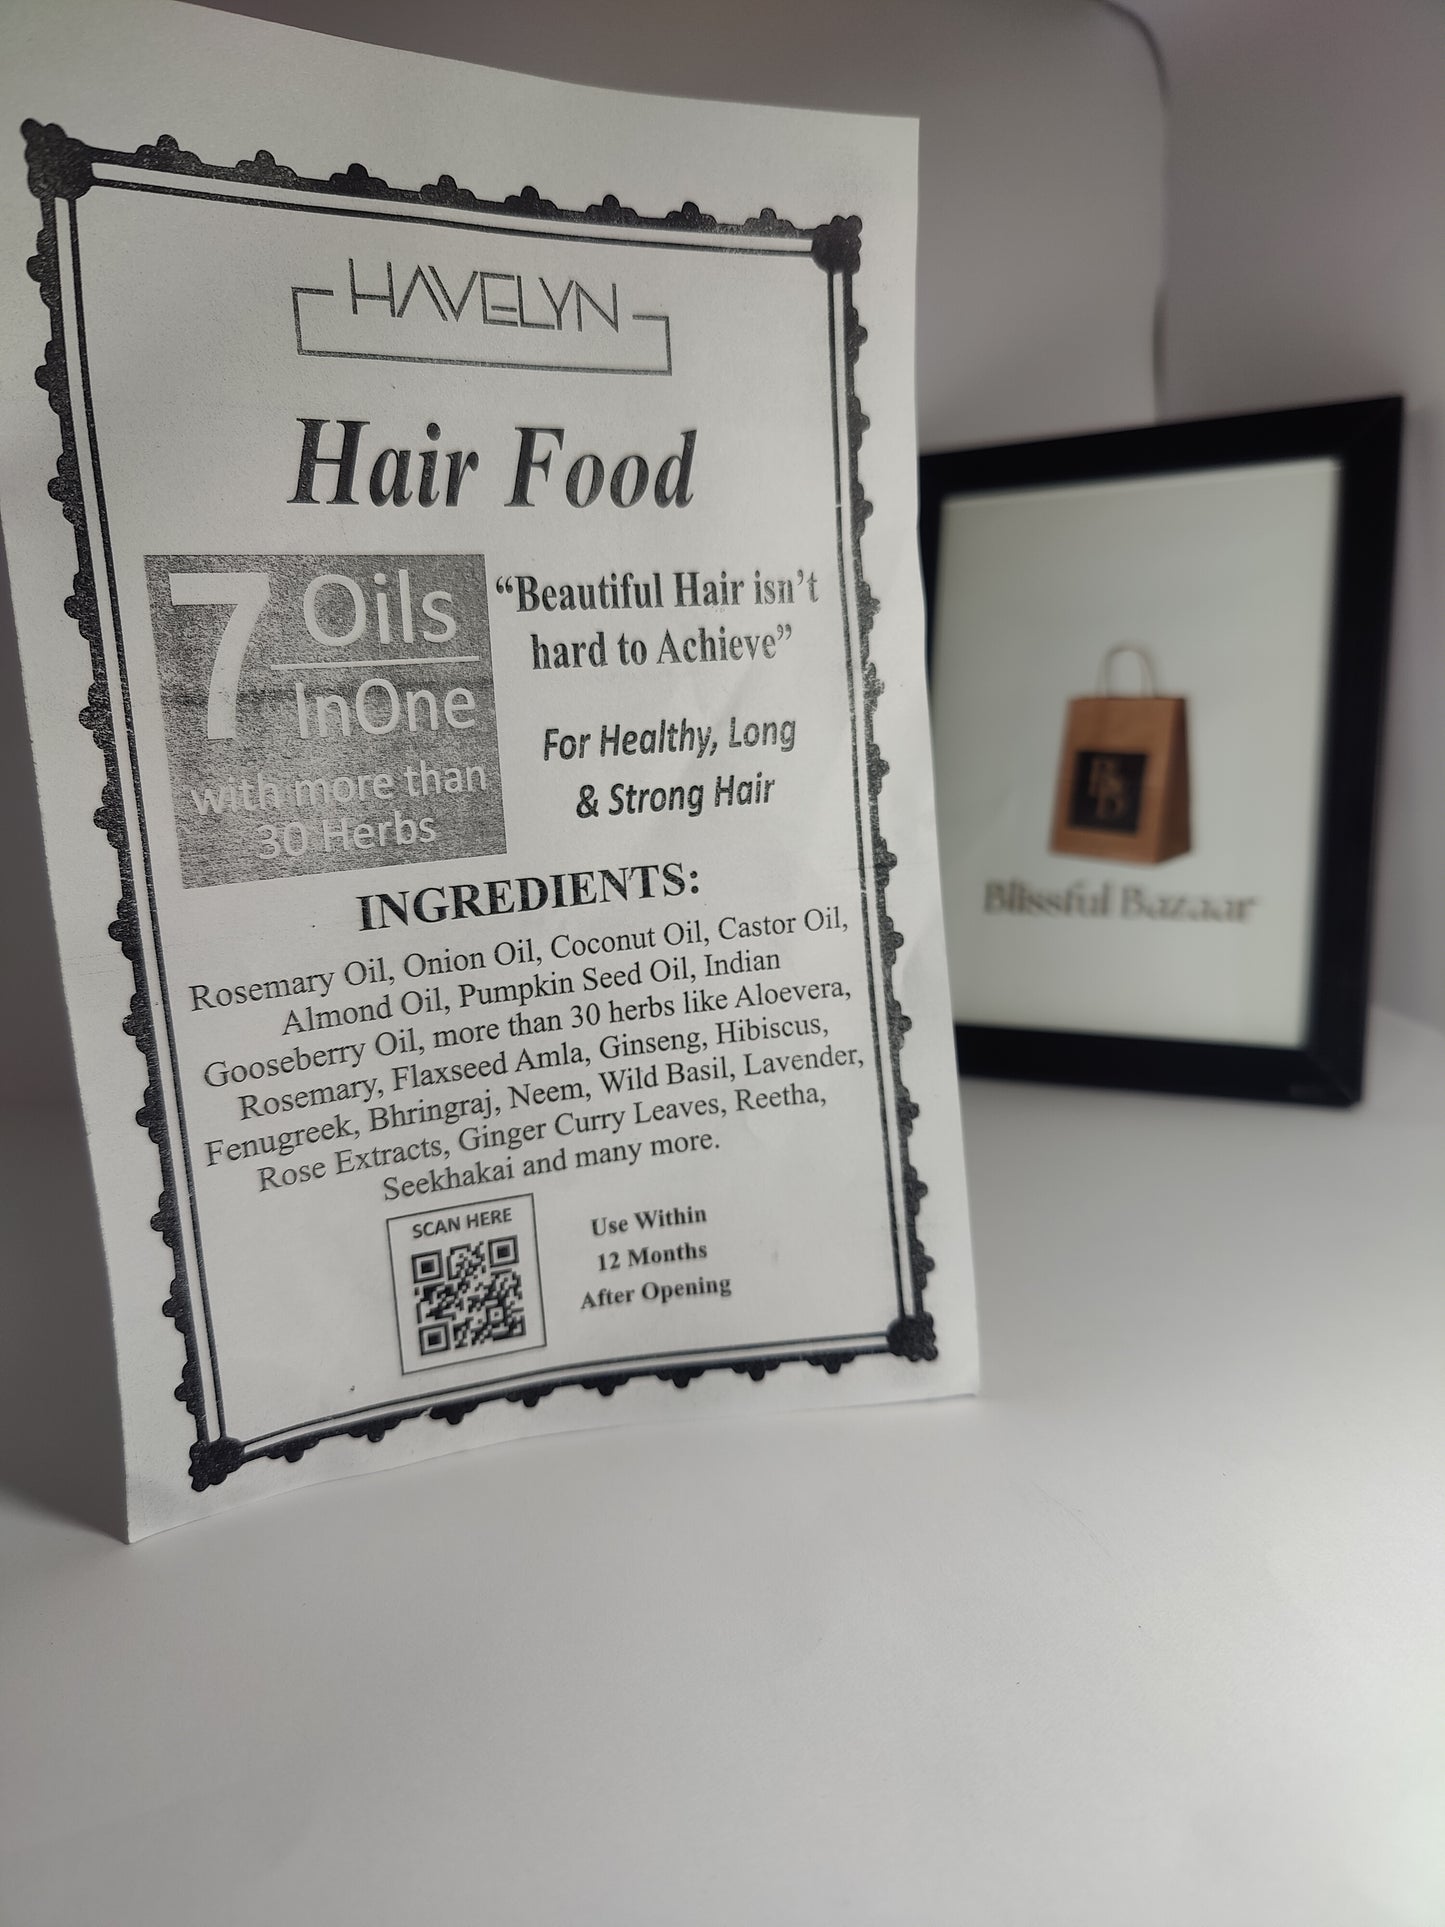 Havelyn Hair Food 7 Oils In 1